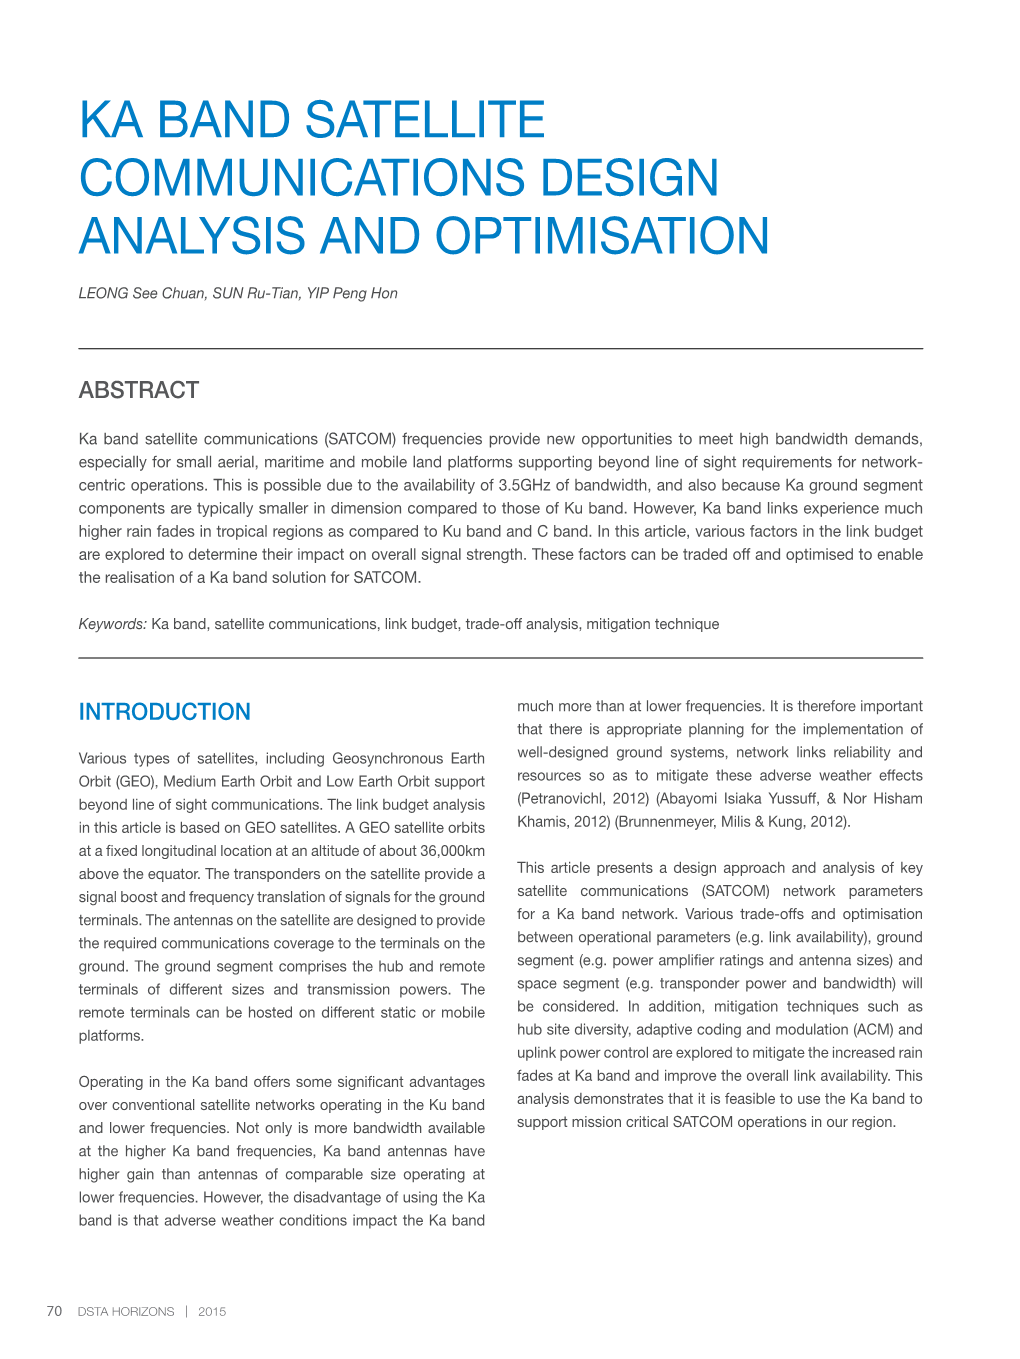 Ka Band Satellite Communications Design Analysis and Optimisation